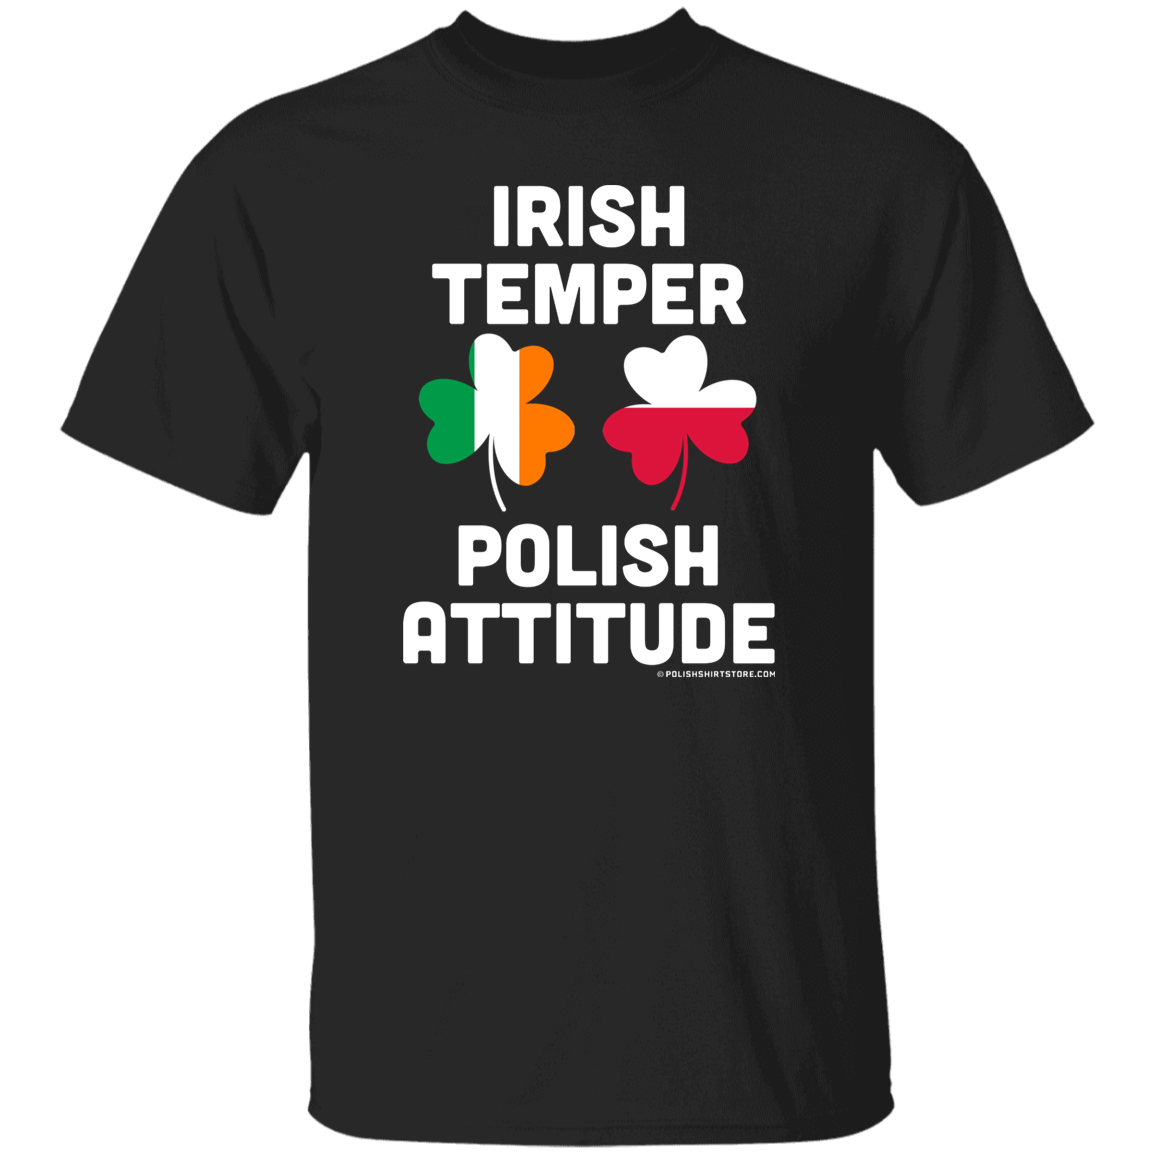 Irish Temper Polish Attitude Apparel CustomCat G500 5.3 oz. T-Shirt Black S